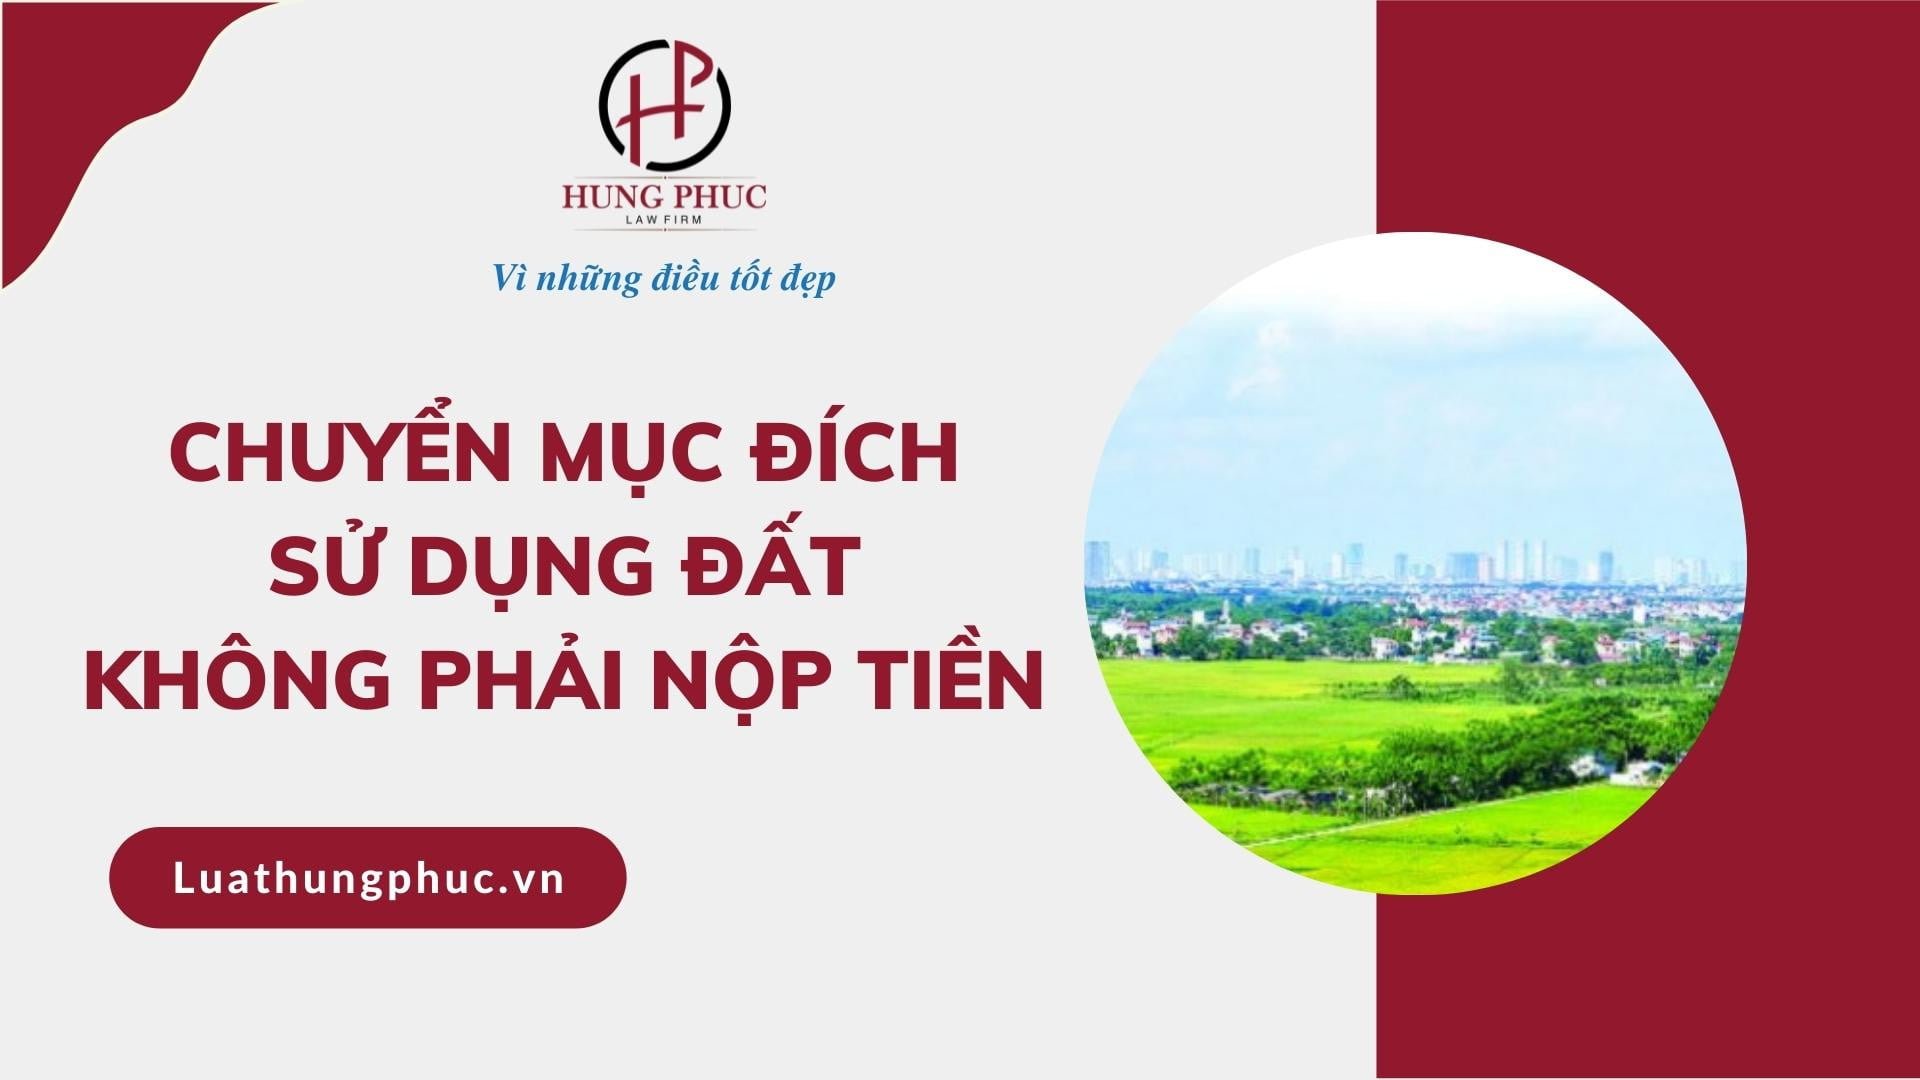 Truong Hop Chuyen Muc Dich Su Dung Dat Khong Phai Nop Tien 1